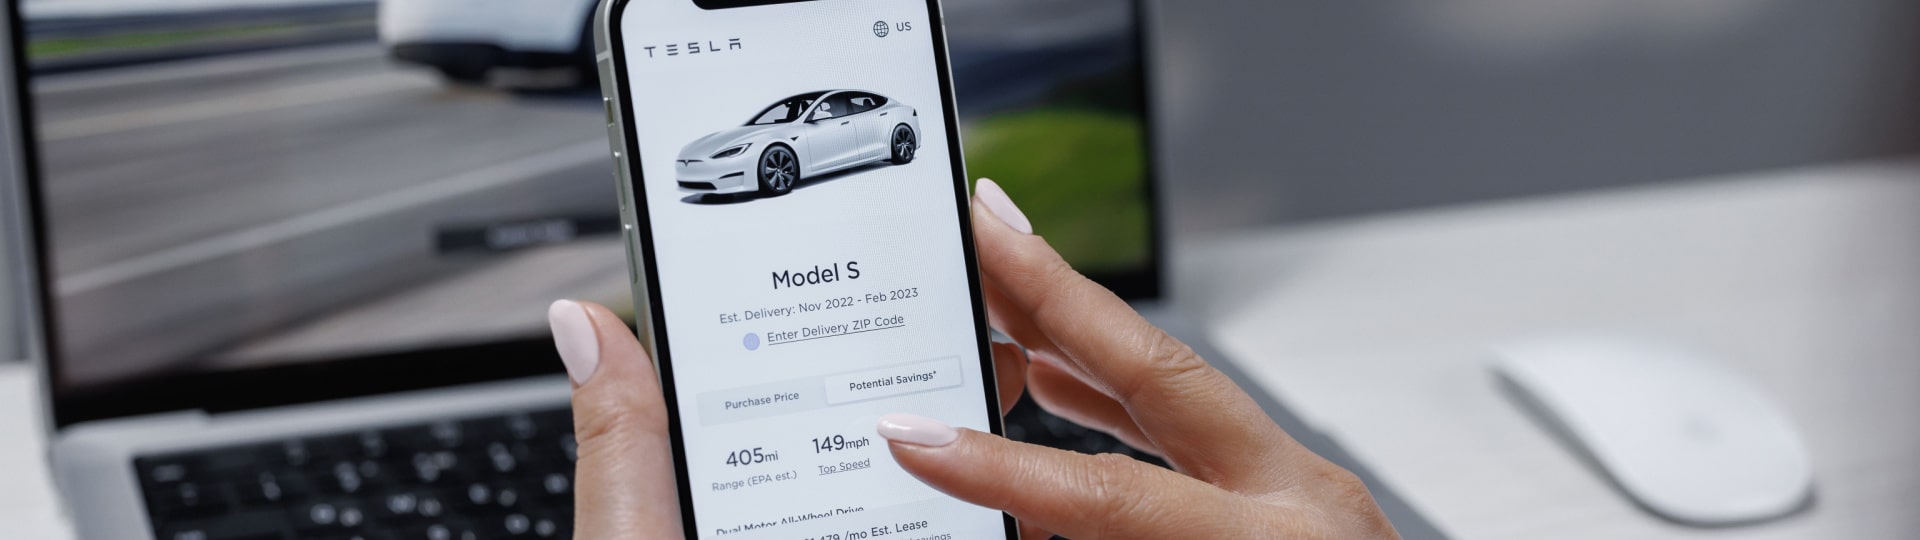 Tesla snížila ceny svých elektromobilů v USA a v Evropě